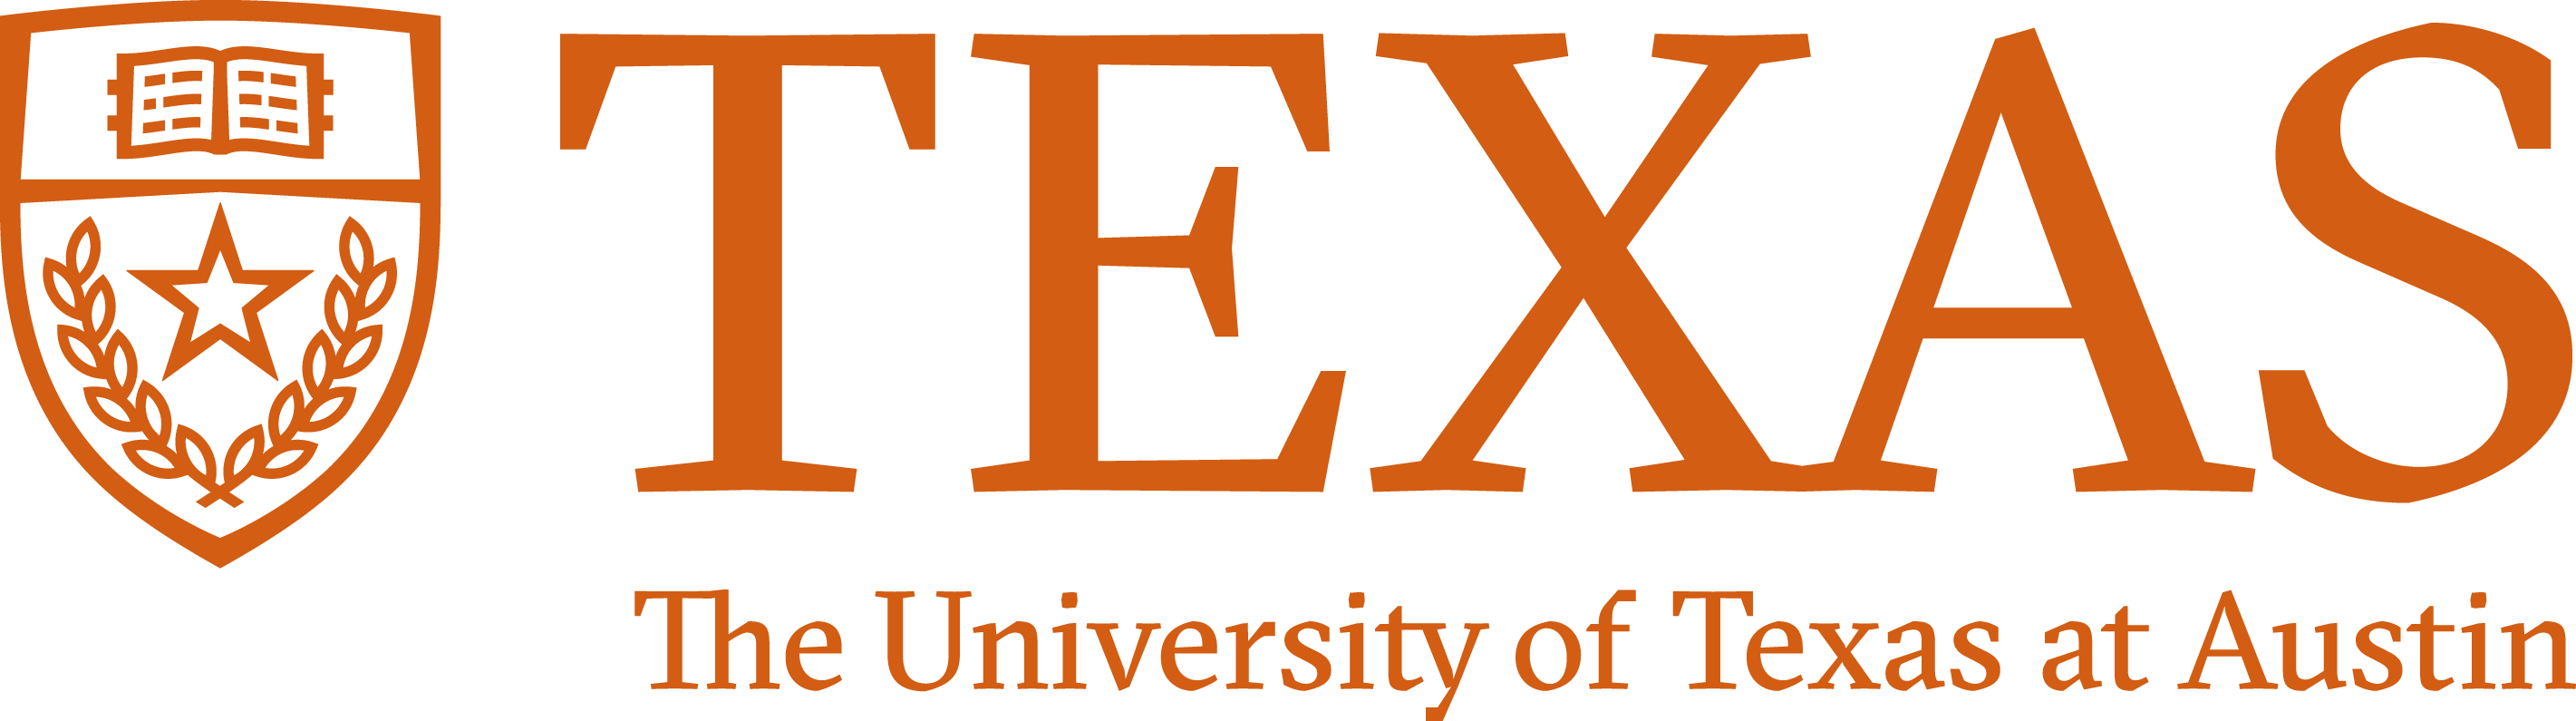 テキサス大学オースティン校のロゴ – STAR Network